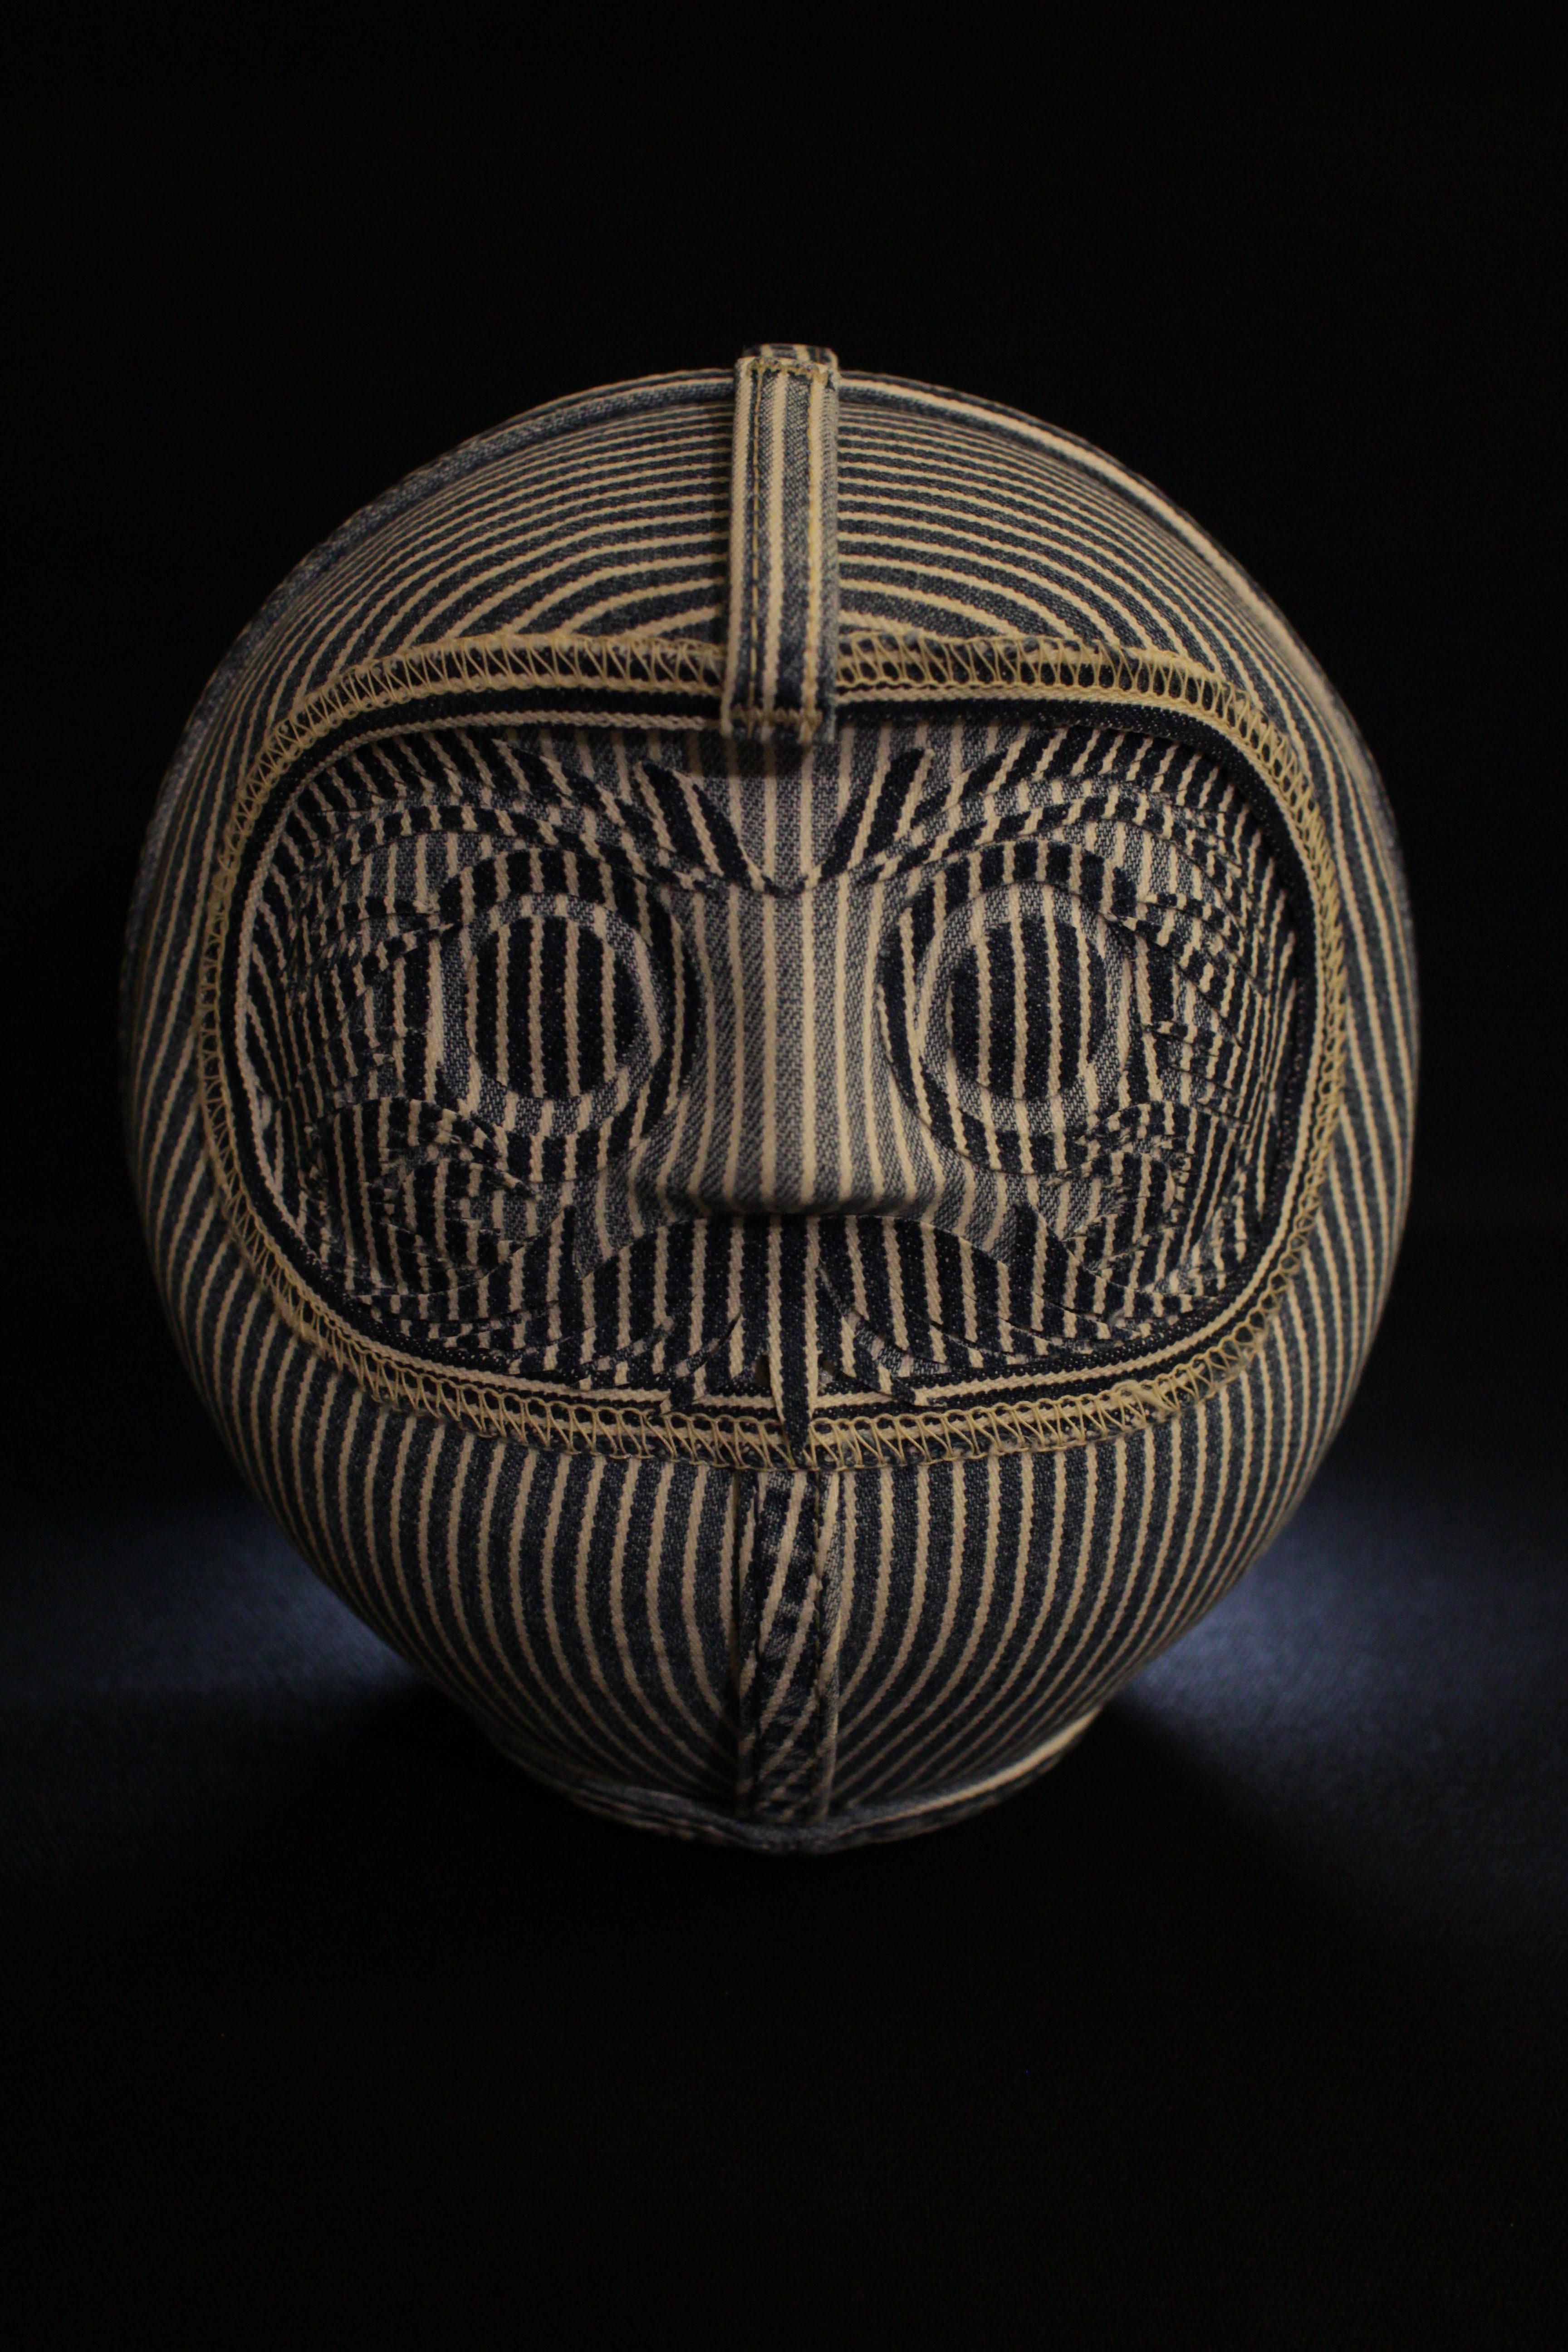 

Daruma est une figurine traditionnelle japonaise qui signifie se relever encore et encore même après être tombé.
Depuis environ 400 ans, elle est aimée comme décoration pour conjurer le mauvais sort ou pour exprimer des souhaits.

La signification